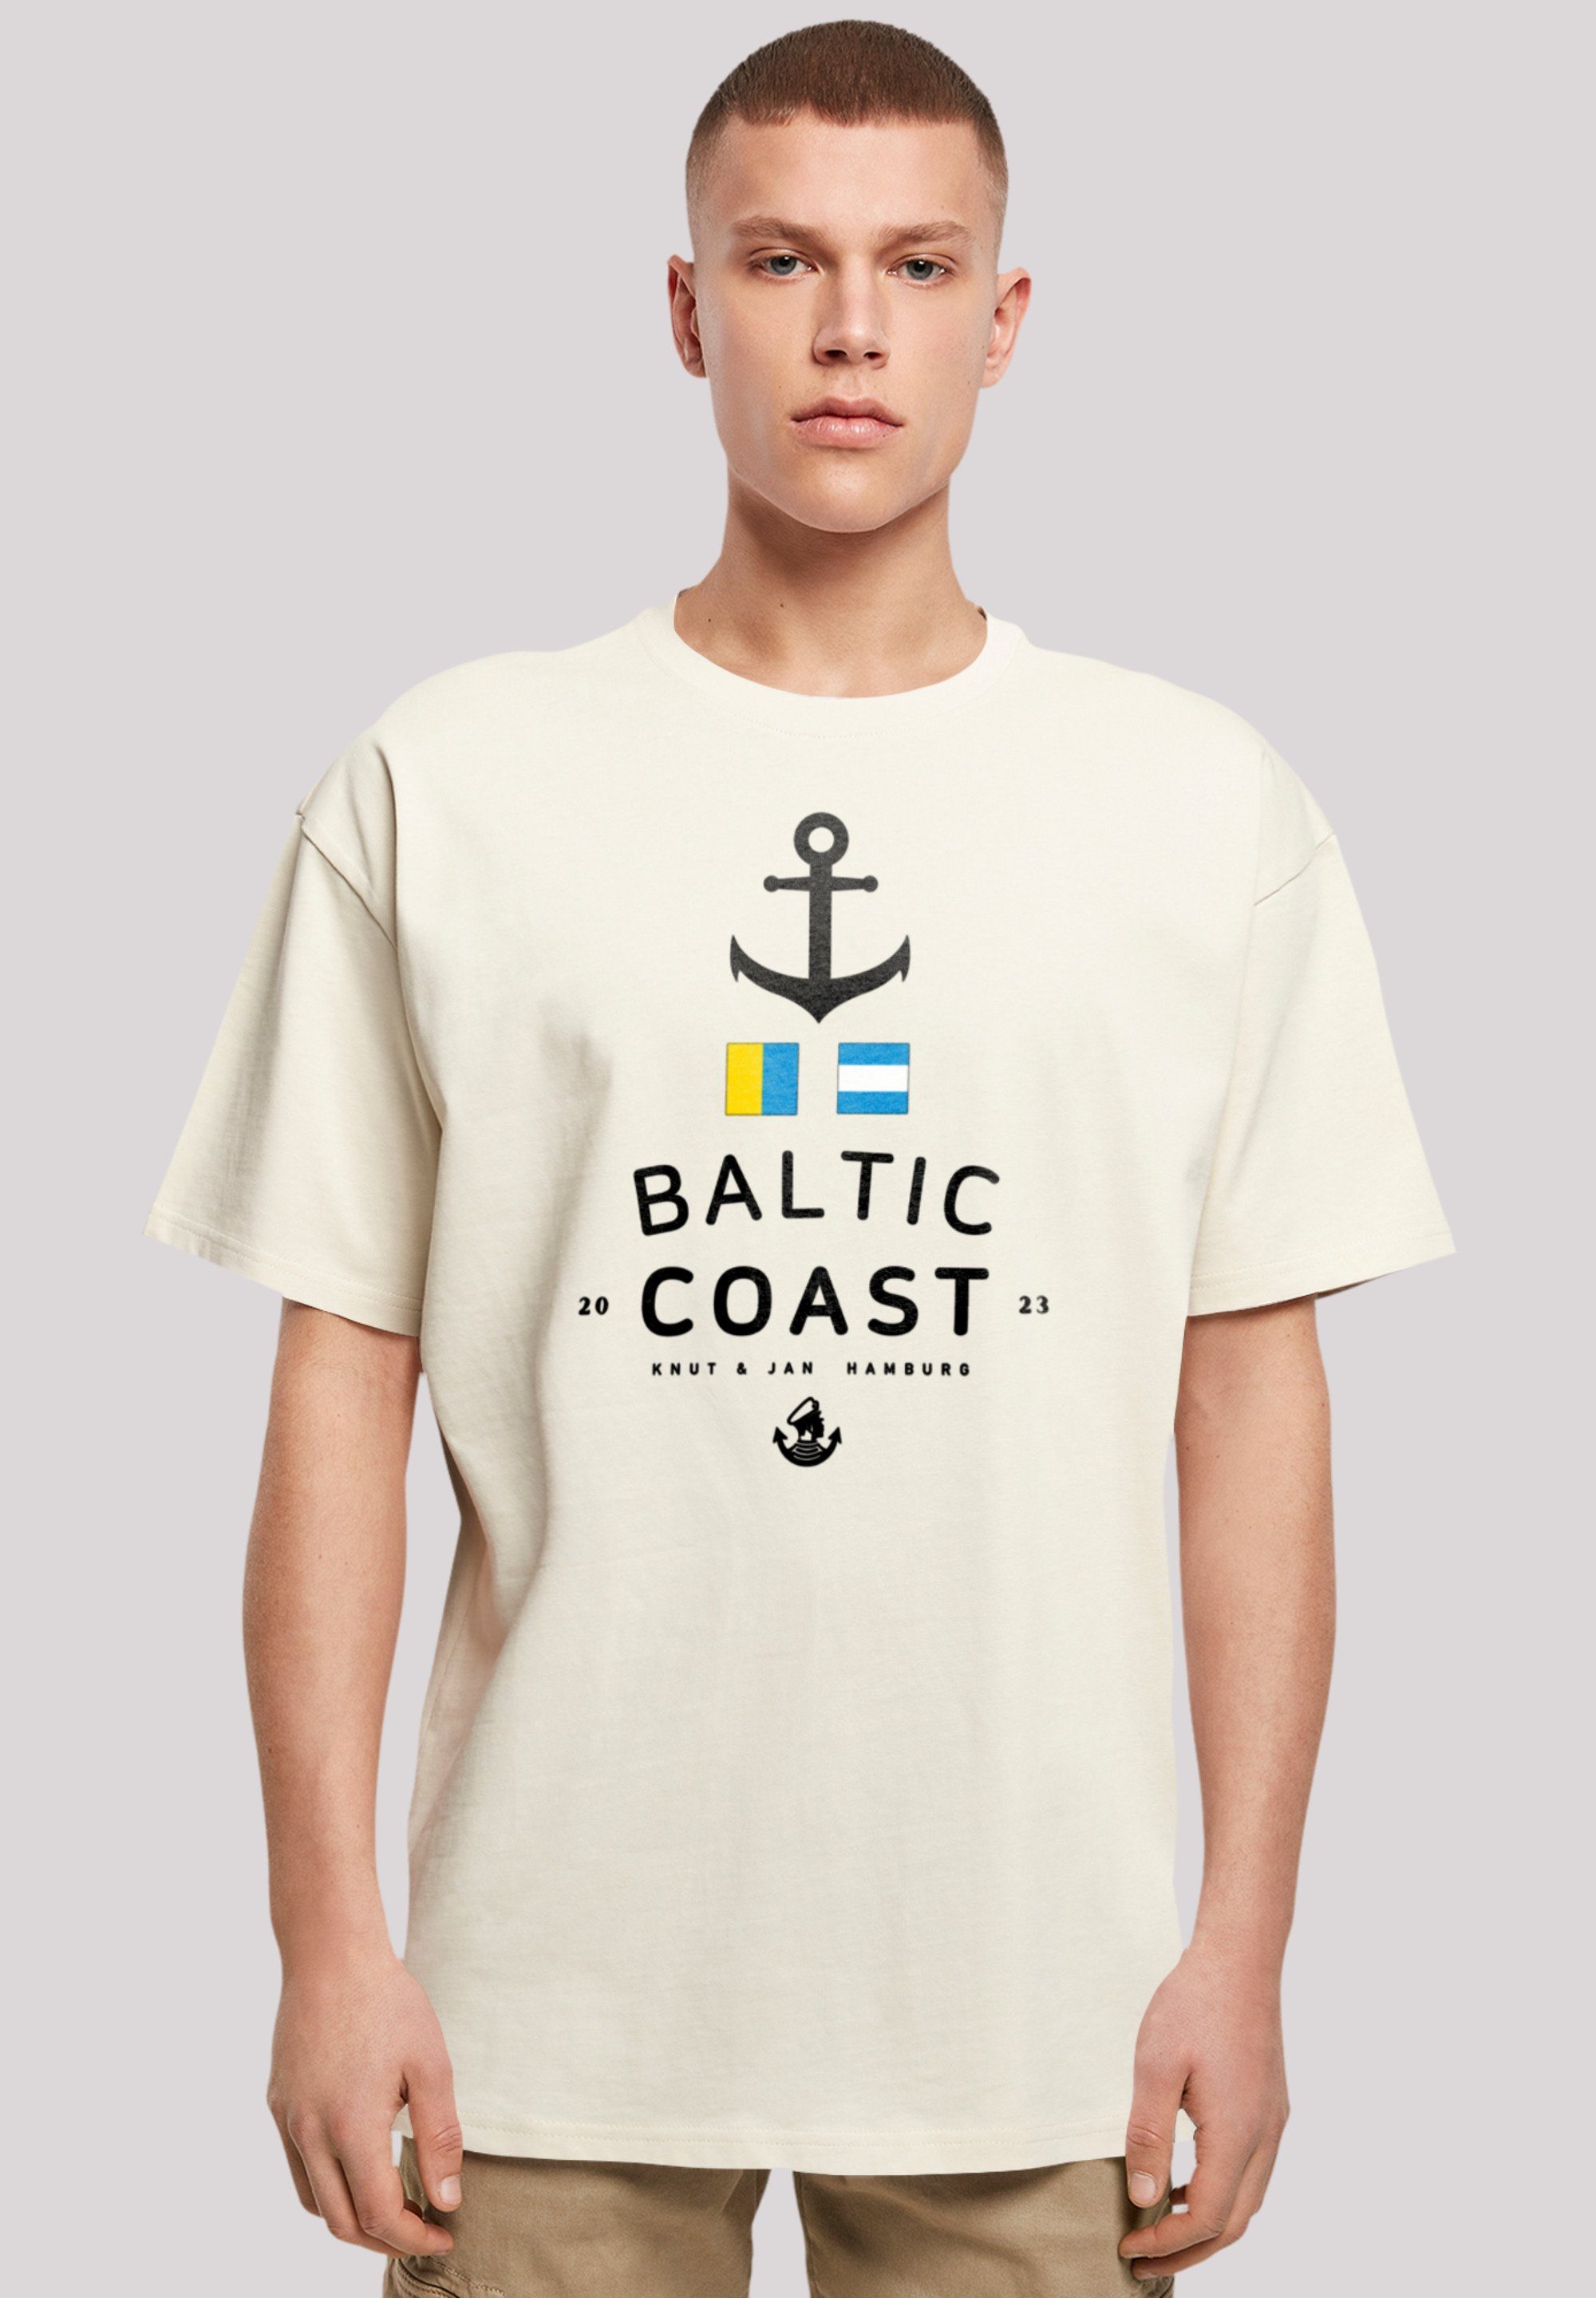 F4NT4STIC T-Shirt Ostsee Baltic Sea Knut & Jan Hamburg Print sand